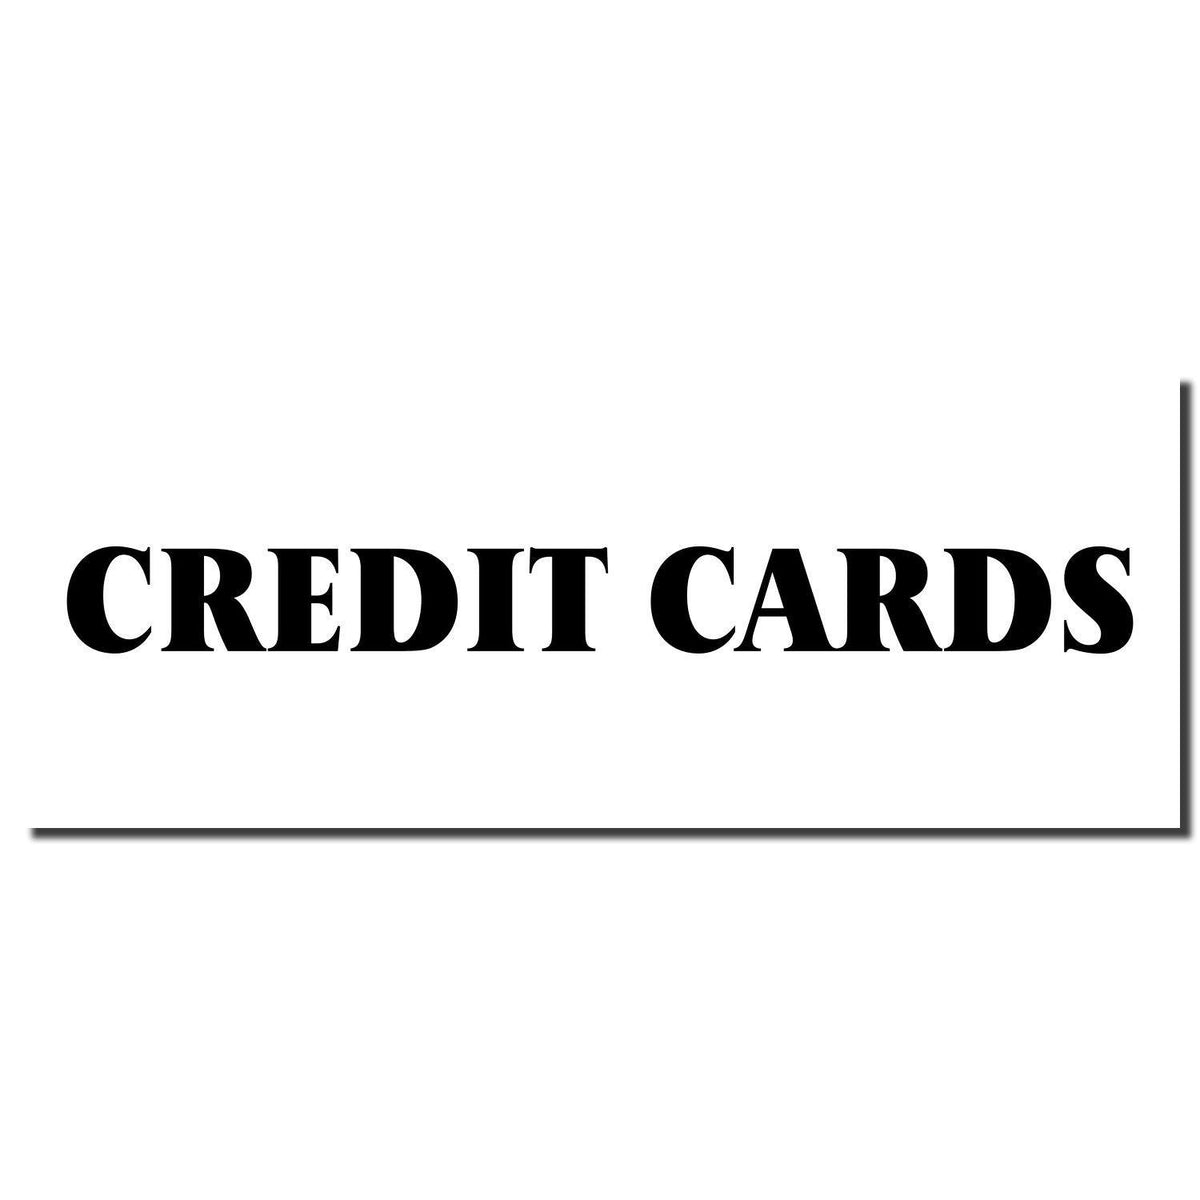 Enlarged Imprint Large Pre Inked Credit Cards Stamp Sample